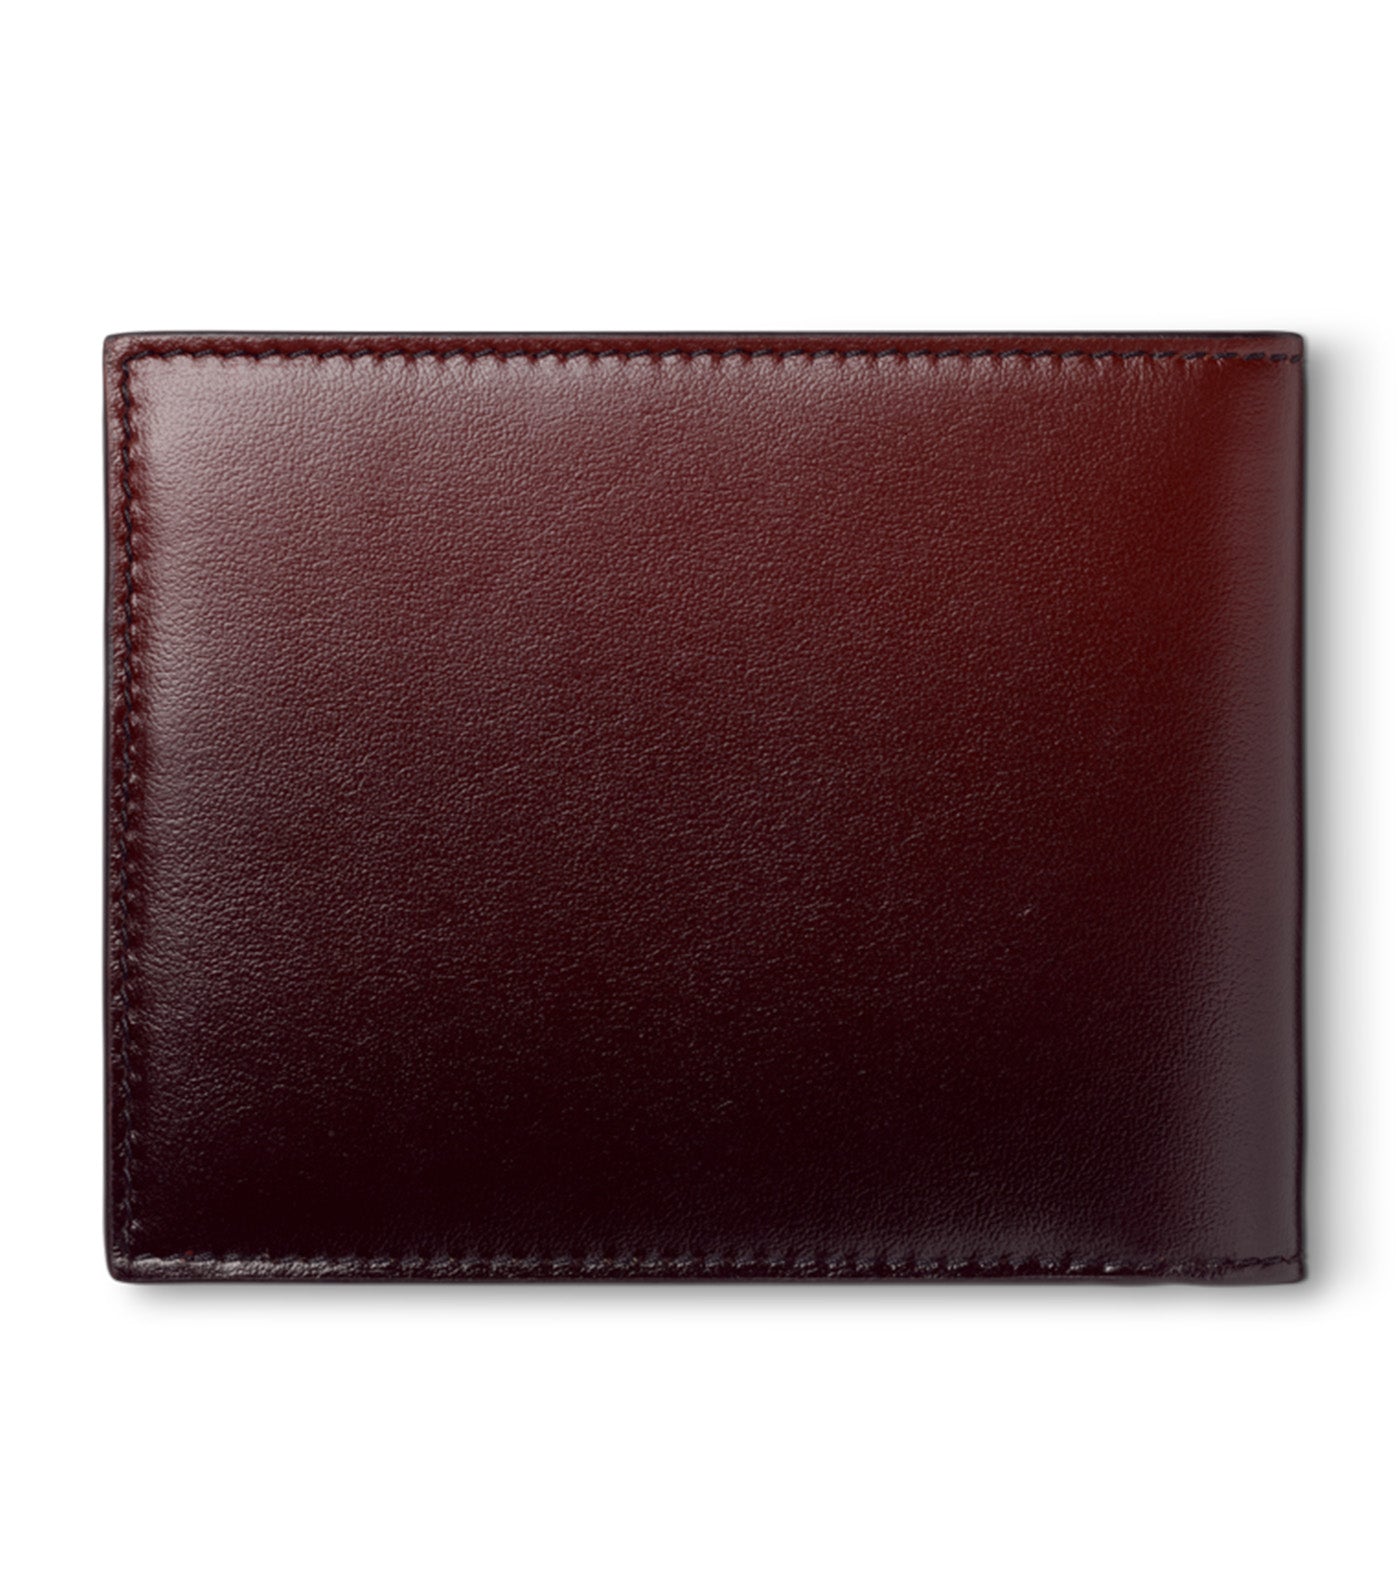 Men's Wallets Zipper Small Male Money Purse Brand Design Coin Bag Wallet  Card Holder Slim Purse Money Wallet - Walmart.com